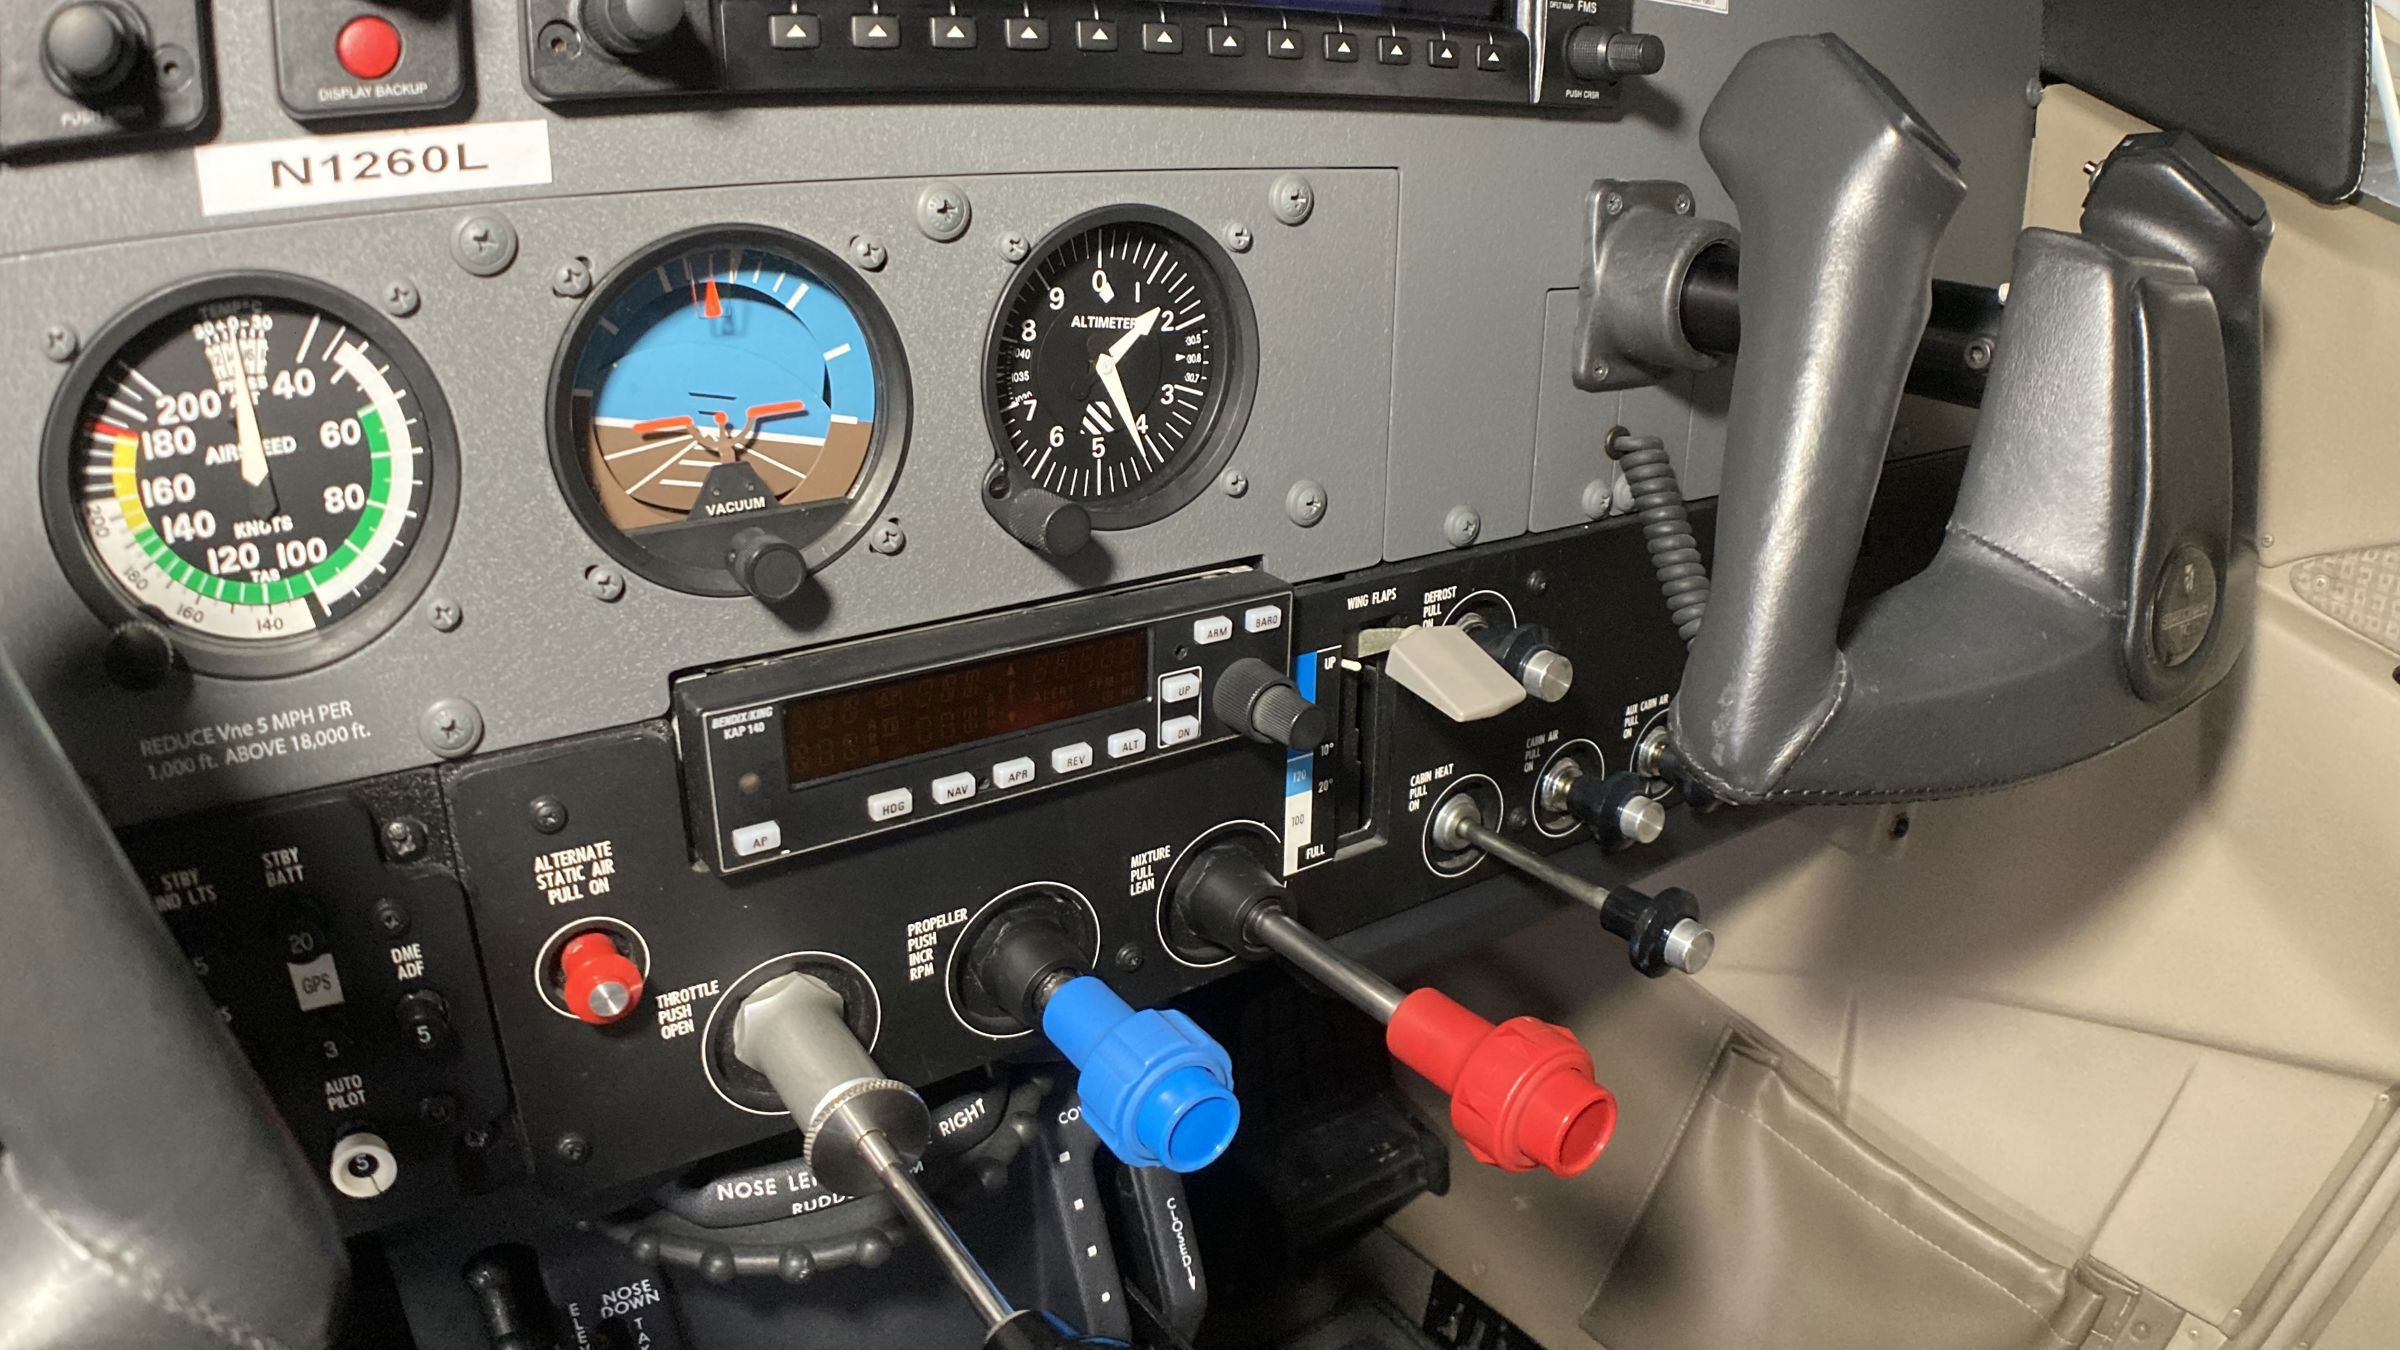 2006 Cessna T206H - Interior